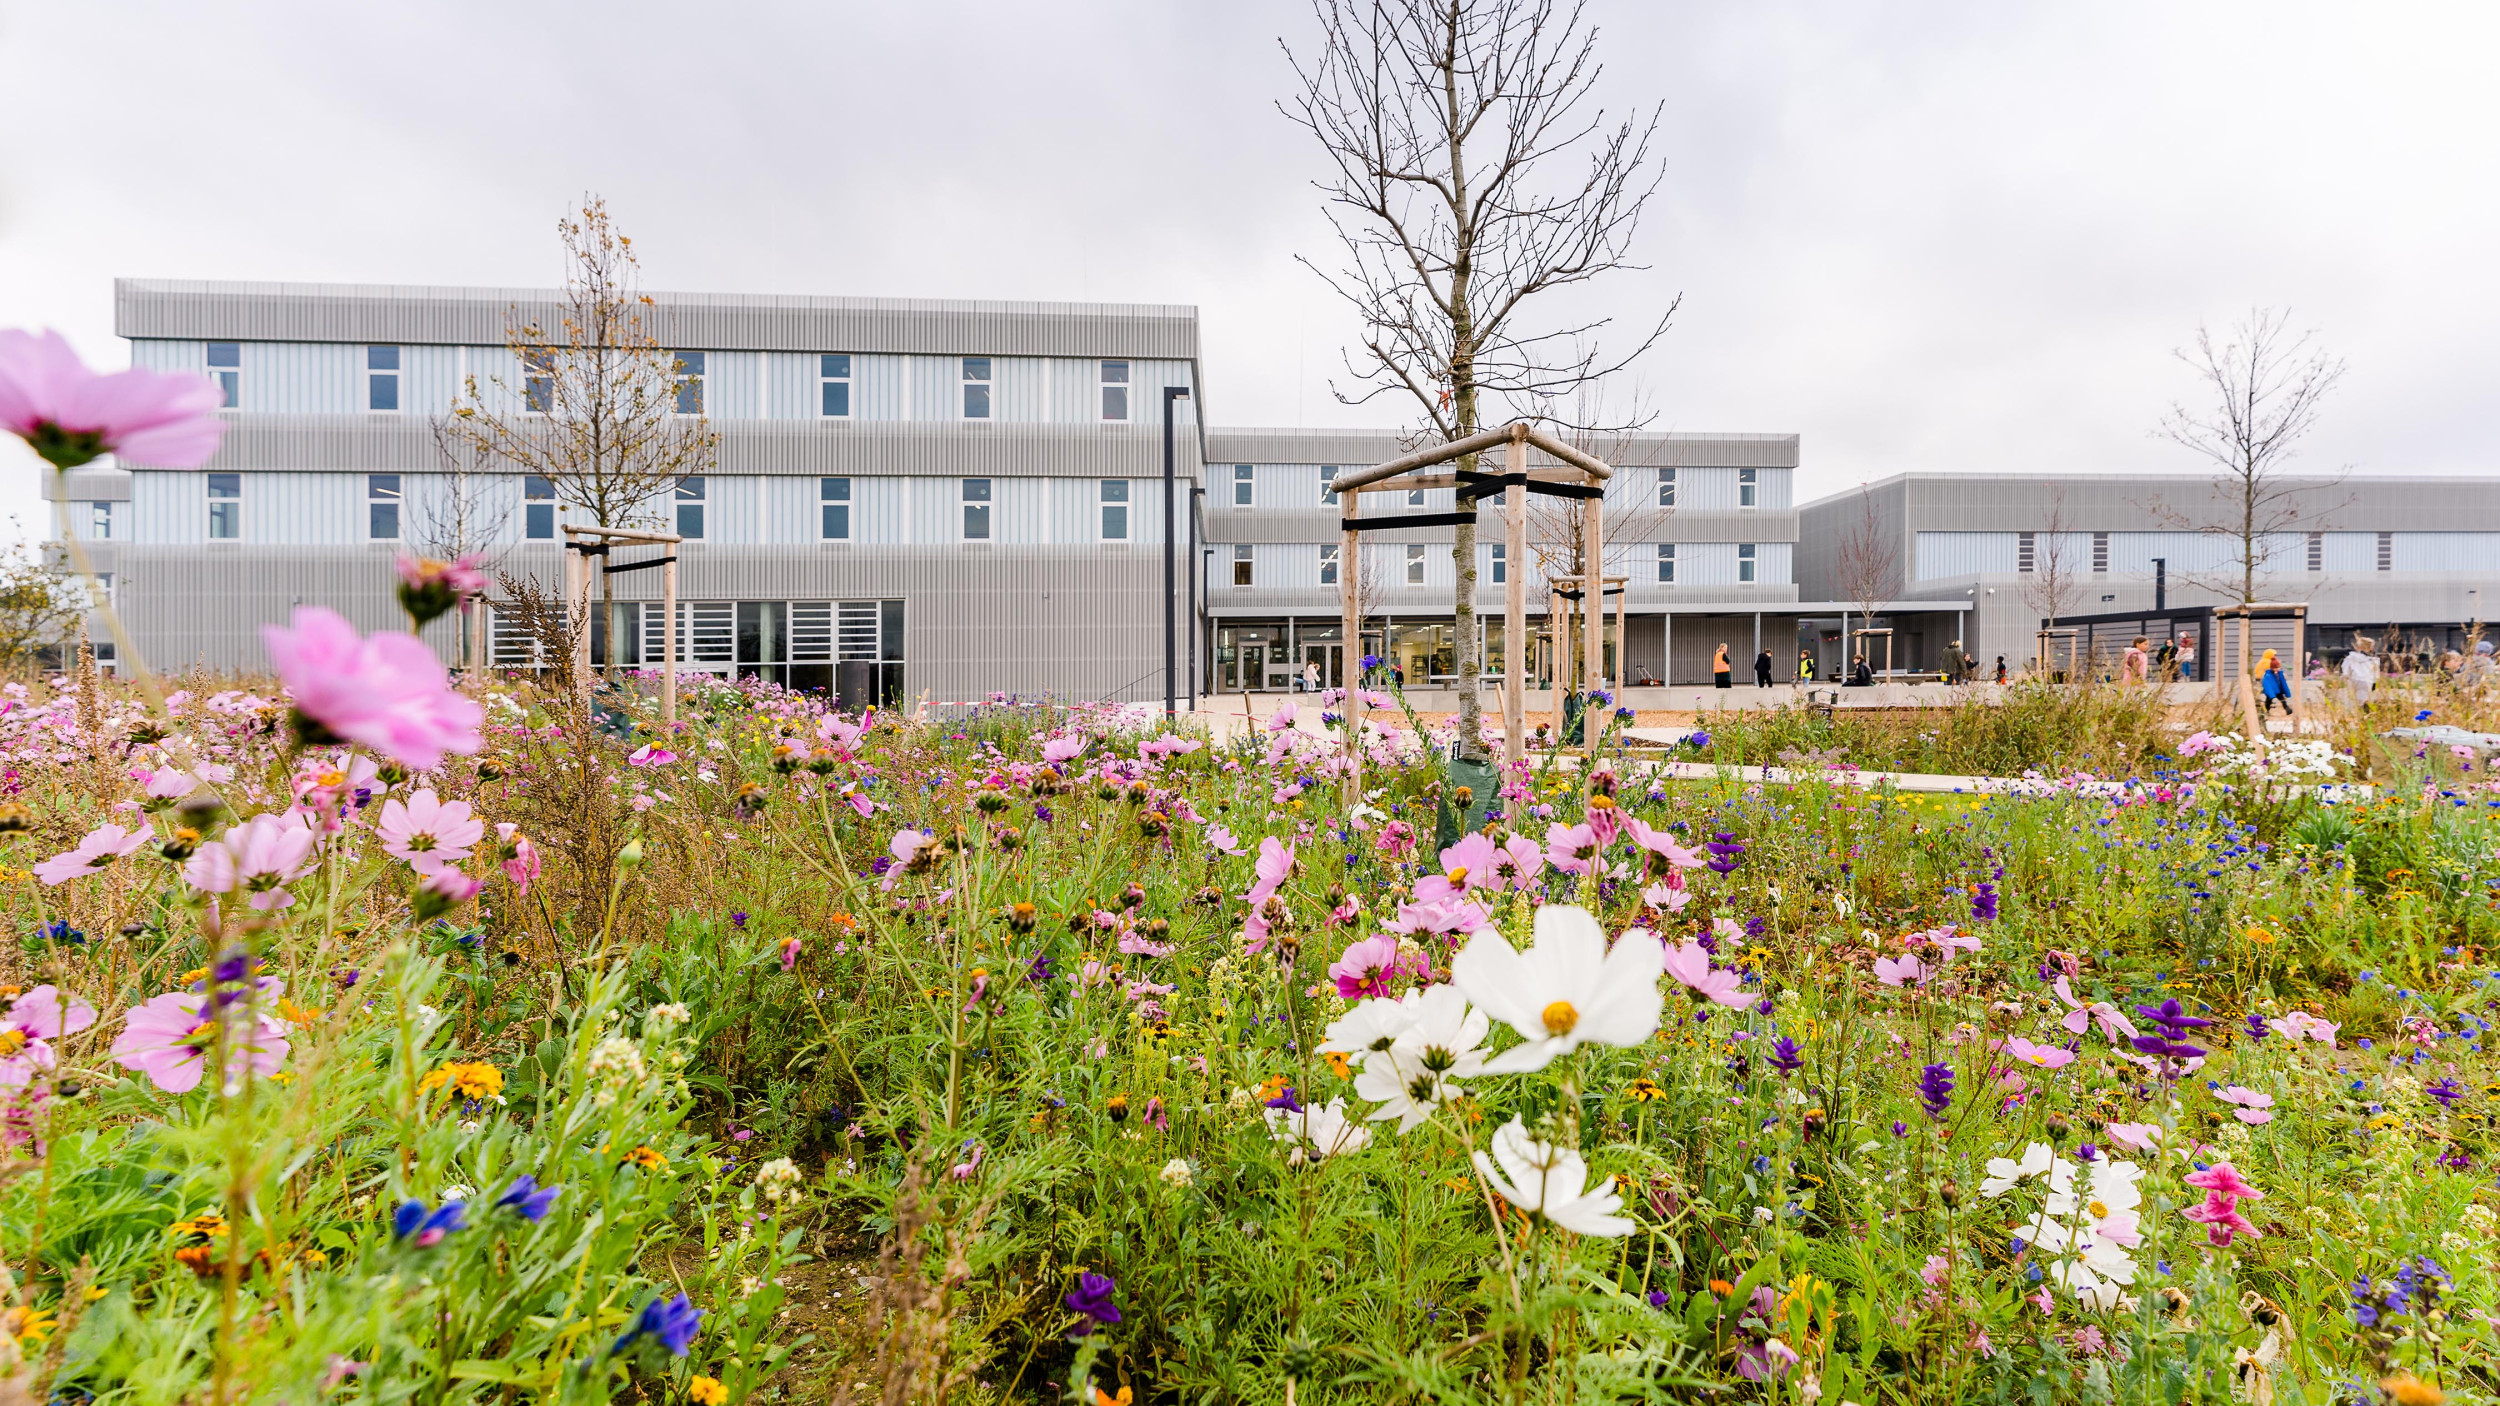 Außenperspektive der dreigeschossigen Schule mit einer bunten Blumenwiese im Vordergrund.